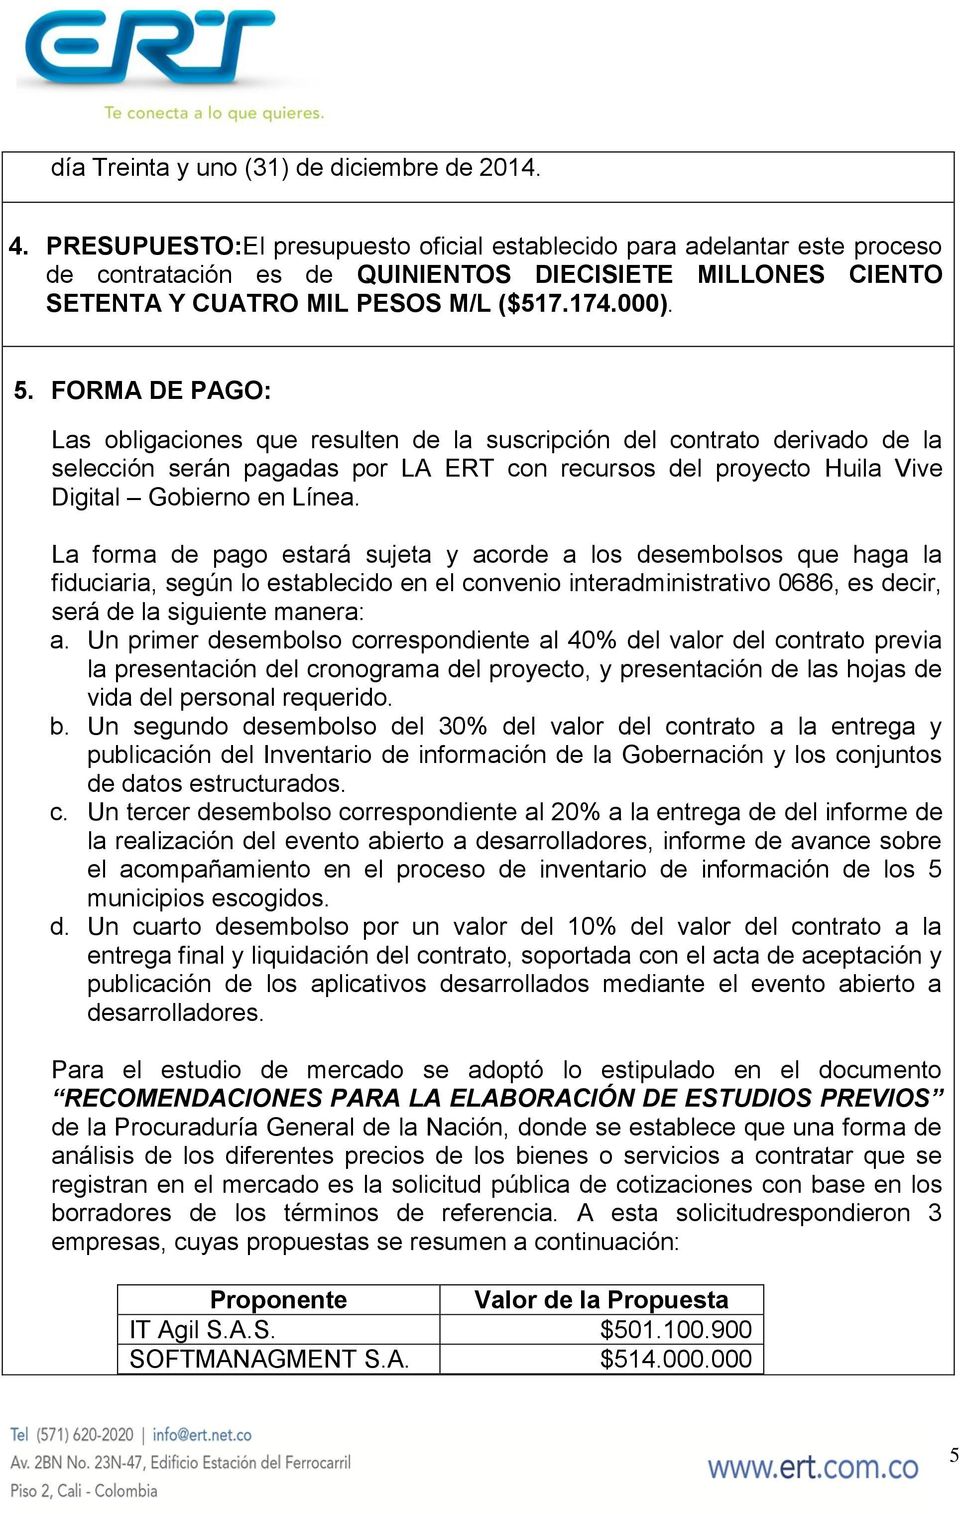 FORMA DE PAGO: Las obligaciones que resulten de la suscripción del contrato derivado de la selección serán pagadas por LA ERT con recursos del proyecto Huila Vive Digital Gobierno en Línea.